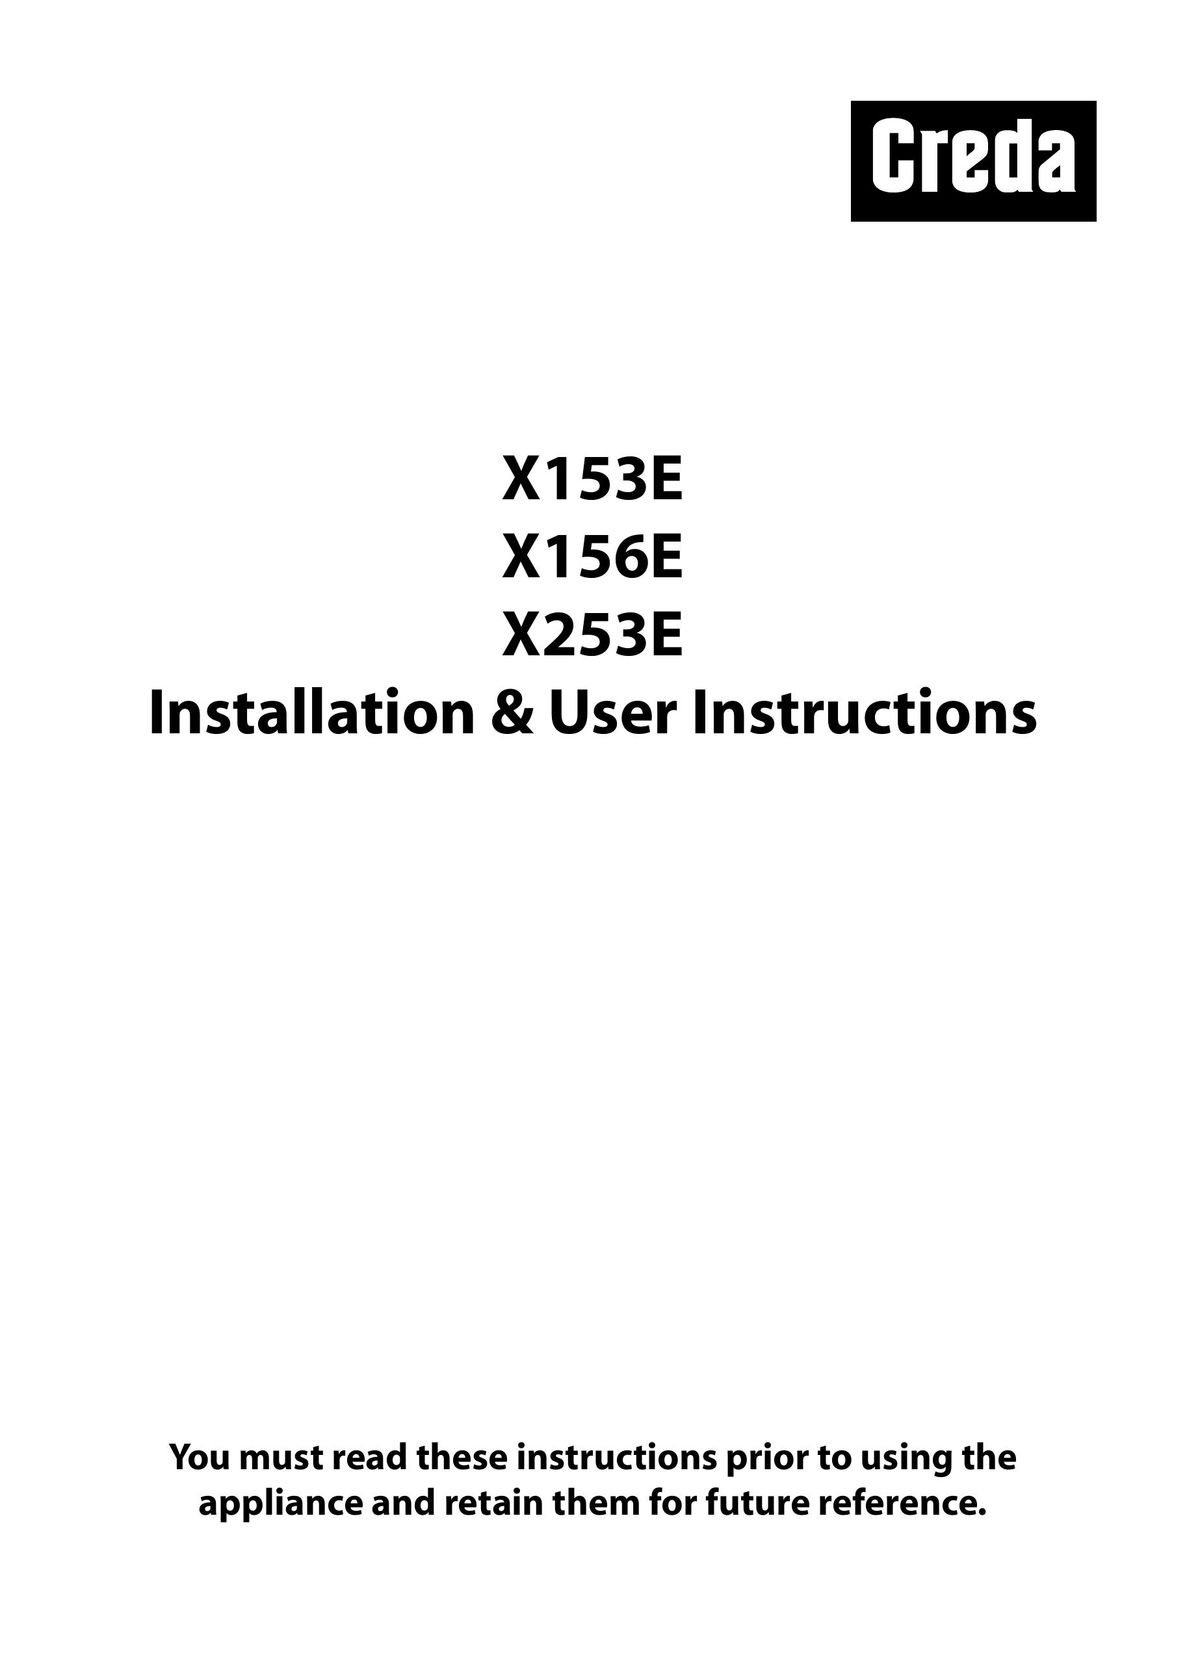 Creda X153E Electric Pressure Cooker User Manual